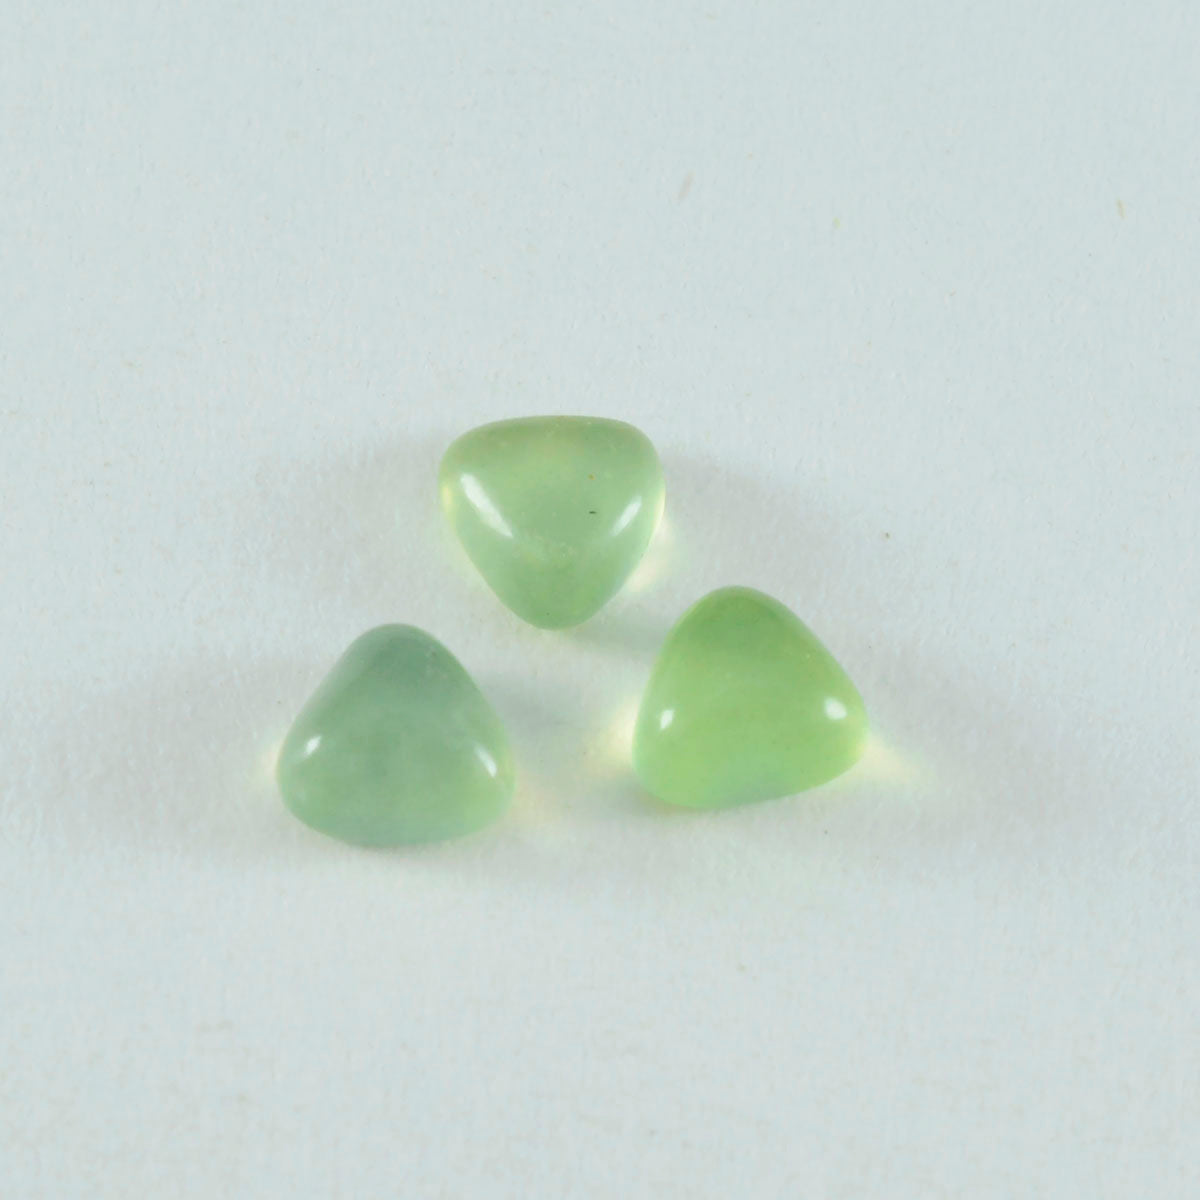 Riyogems 1 pieza cabujón de prehnita verde 12x12 mm forma de billón gemas sueltas de calidad sorprendente